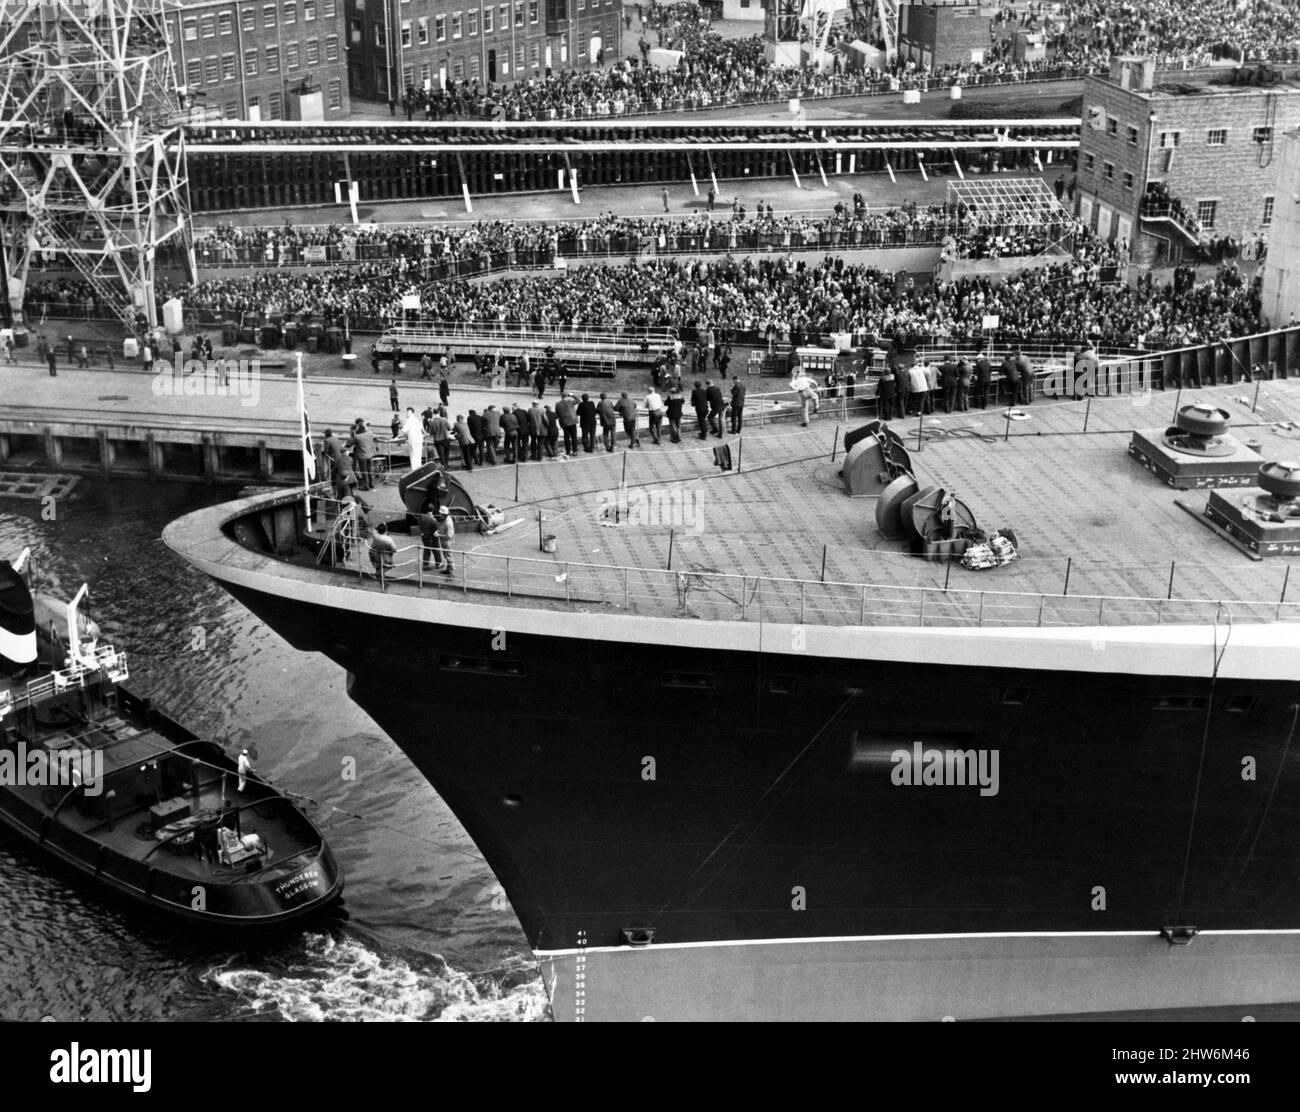 Queen Elizabeth 2, Ozeandampfer, gebaut für die Cunard Line, die von Cunard sowohl als transatlantischer Linienschiff als auch als Kreuzschiff von 1969 bis 2008 betrieben wurde. Im Bild die QE2 Nasen in das auskleidende Becken, die am Tag ihres Starts von Menschenmassen am Hafen beobachtet wurden. 20.. September 1967. Stockfoto